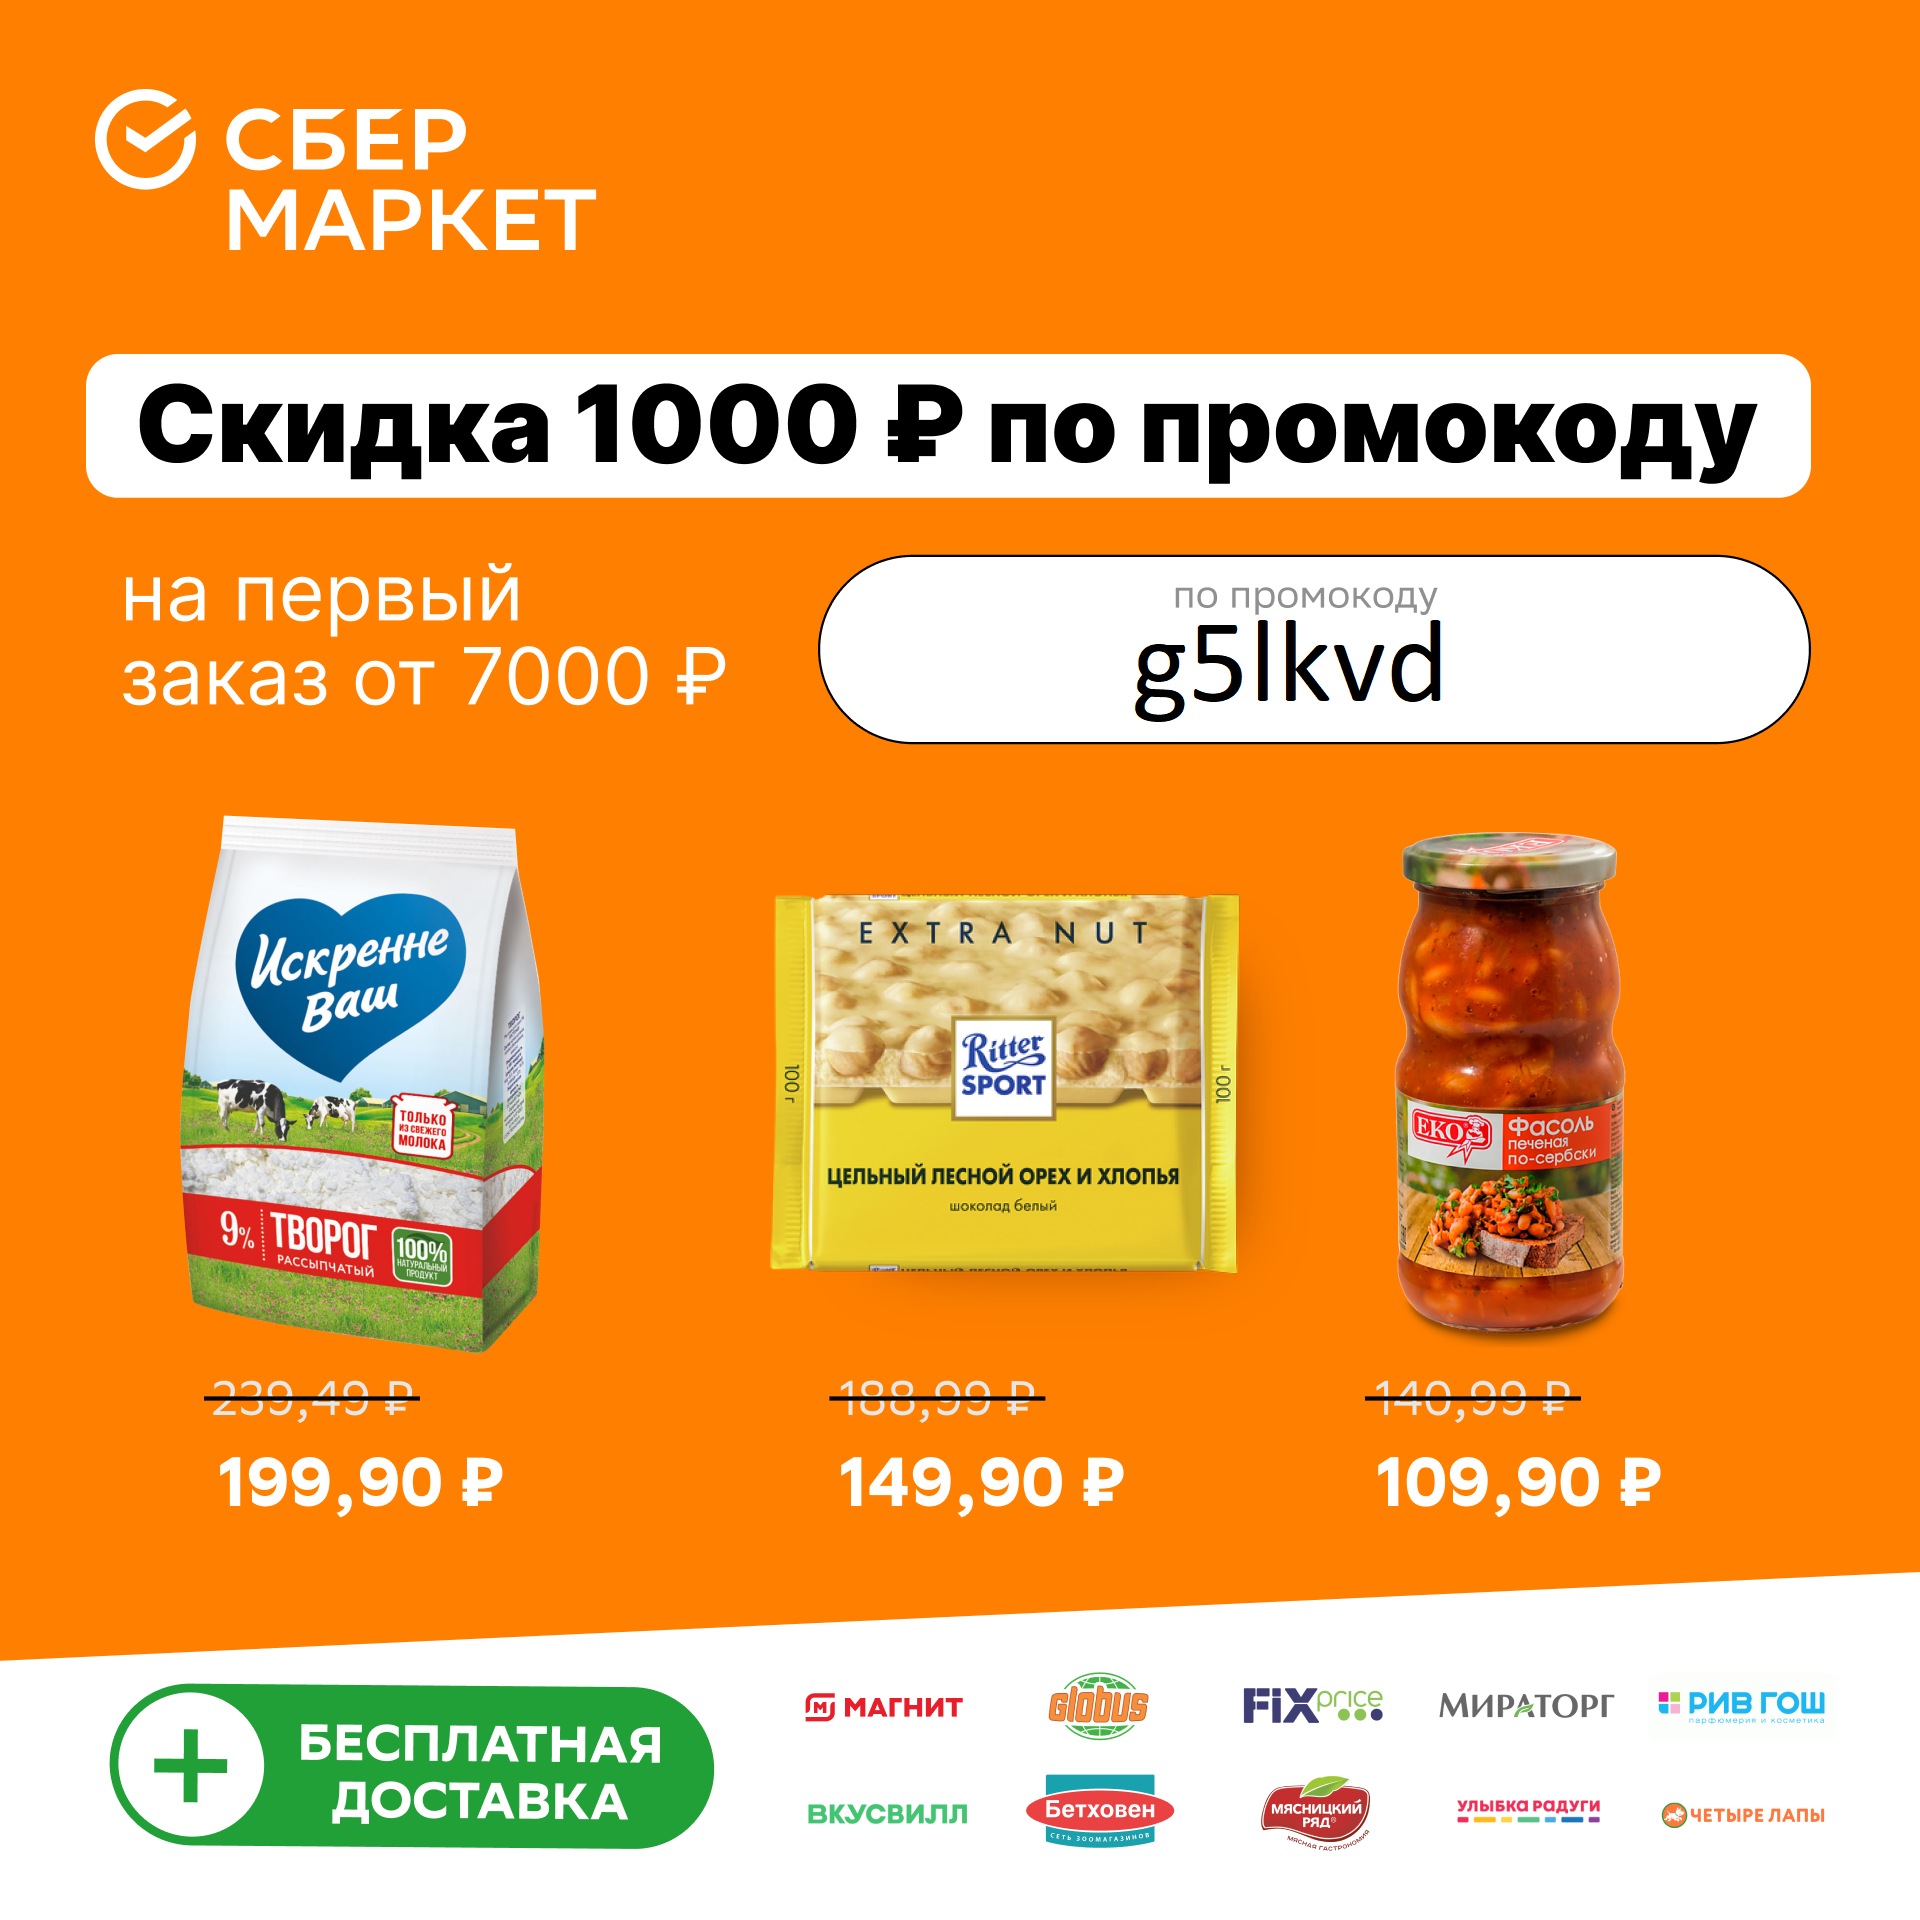 Сбермаркет скидка 1000 рублей